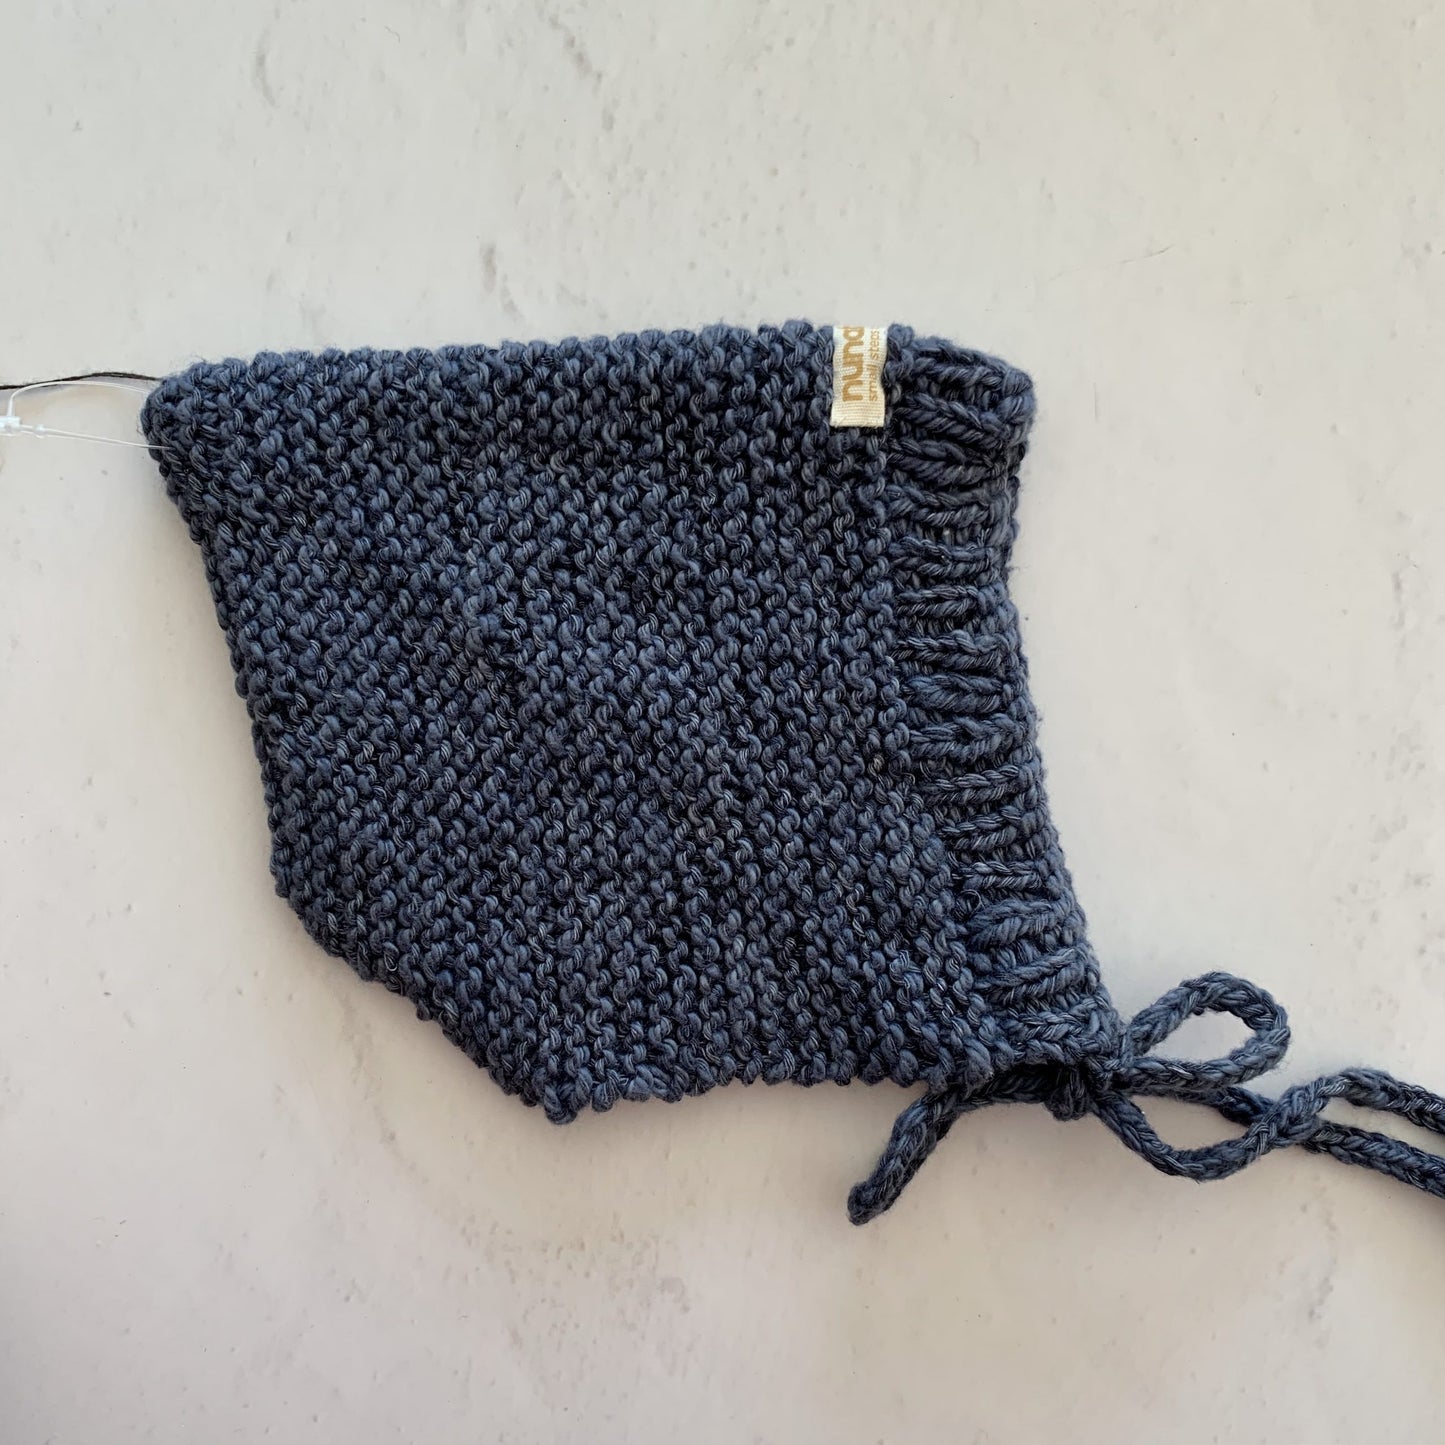 Nunabean - Knitted Bonnets - 6 - 12 months